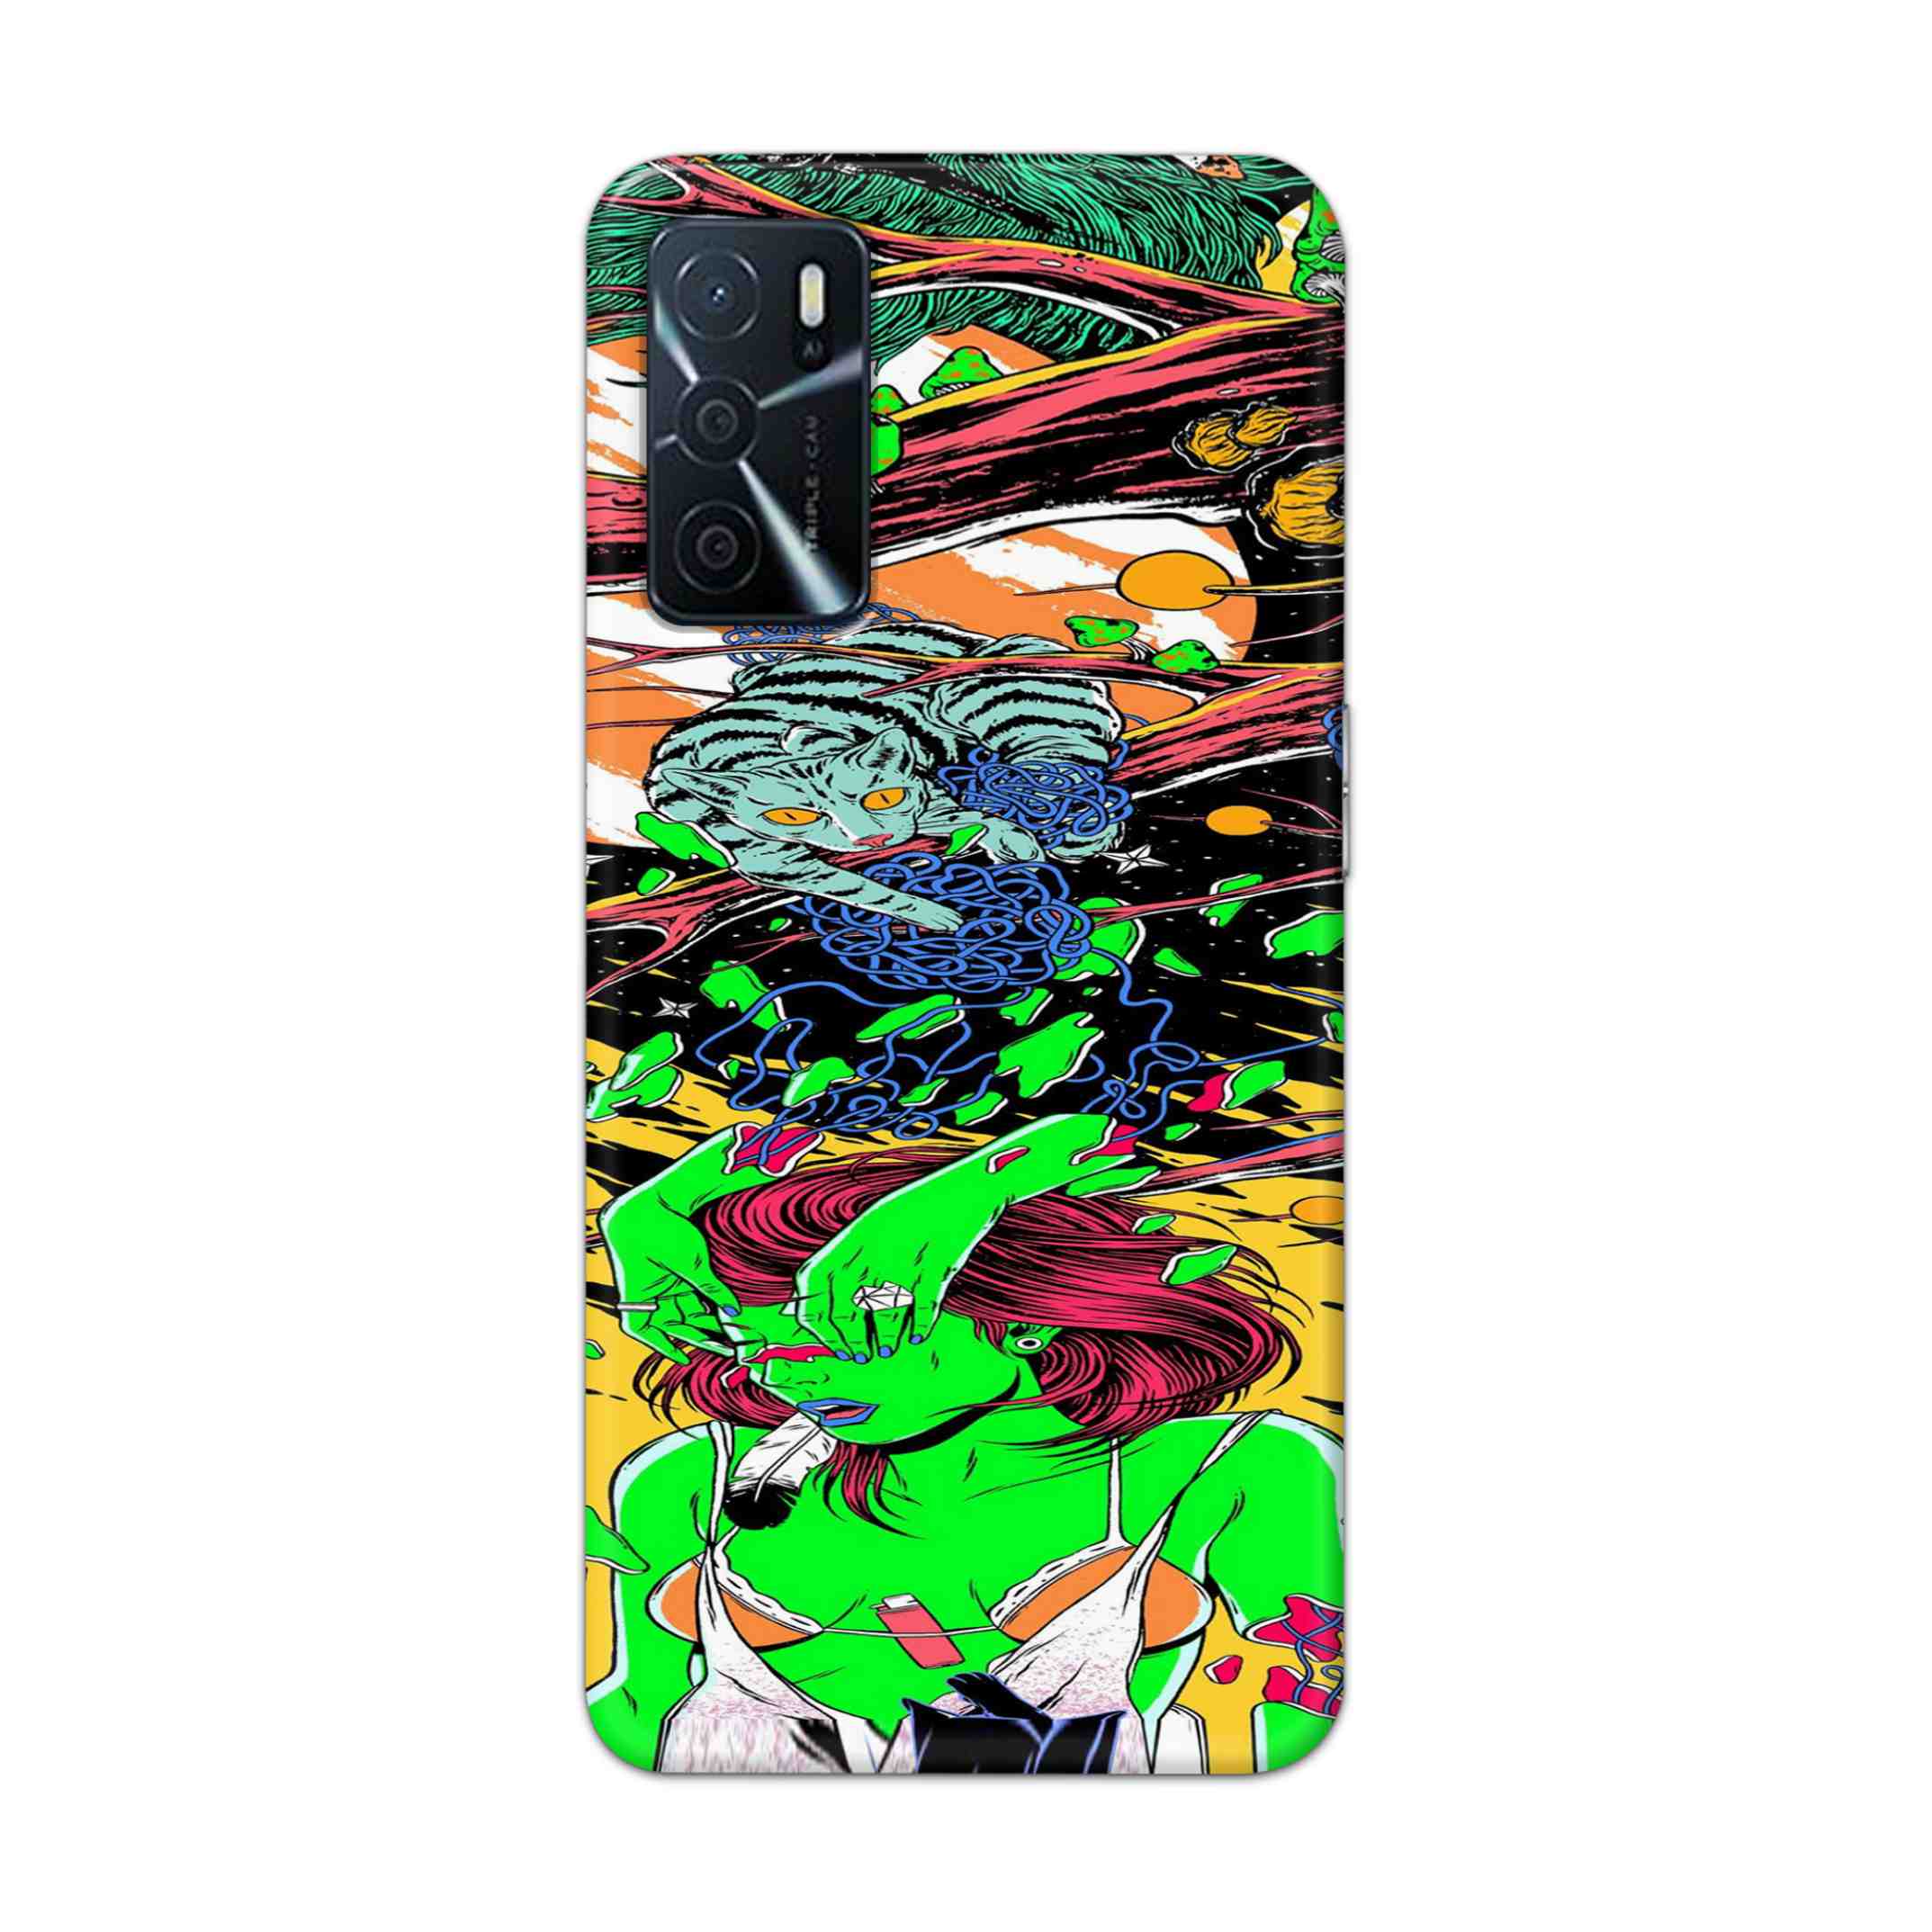 Buy Green Girl Art Hard Back Mobile Phone Case Cover For Oppo A16 Online